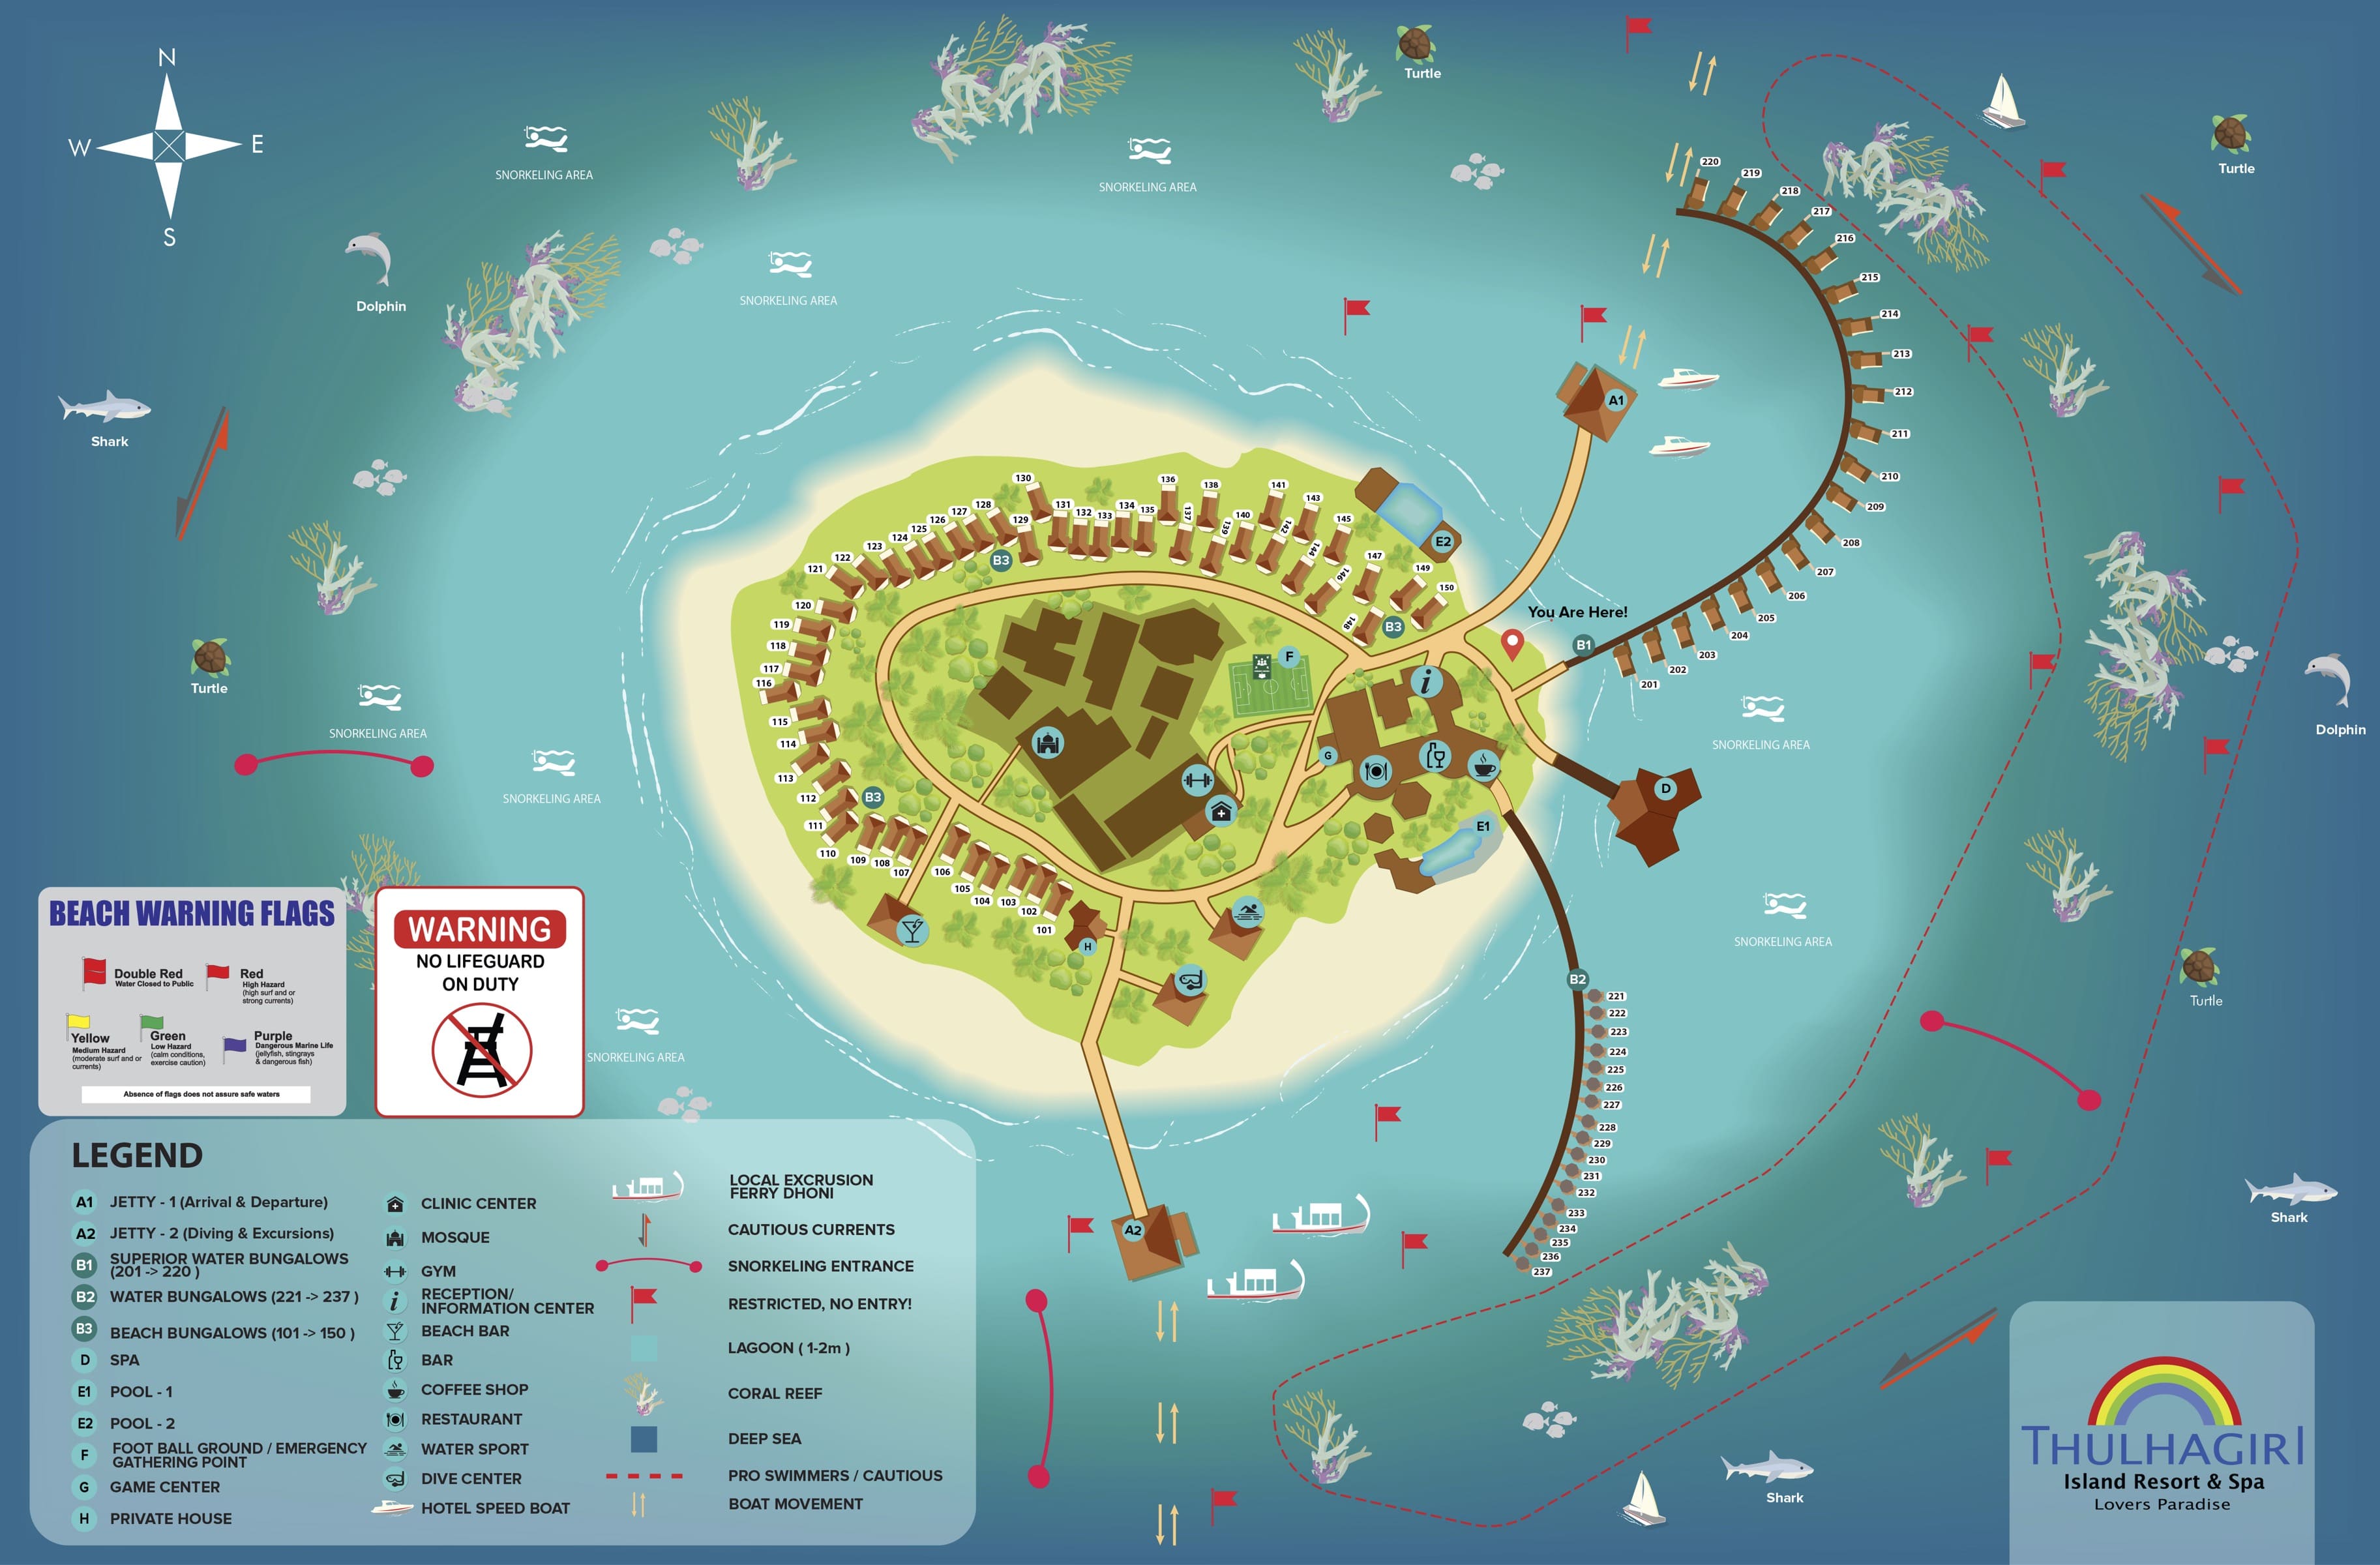 Mappa del Thulhagiri Island Resort & Spa Maldive con descrizione delle strutture e aree di snorkeling